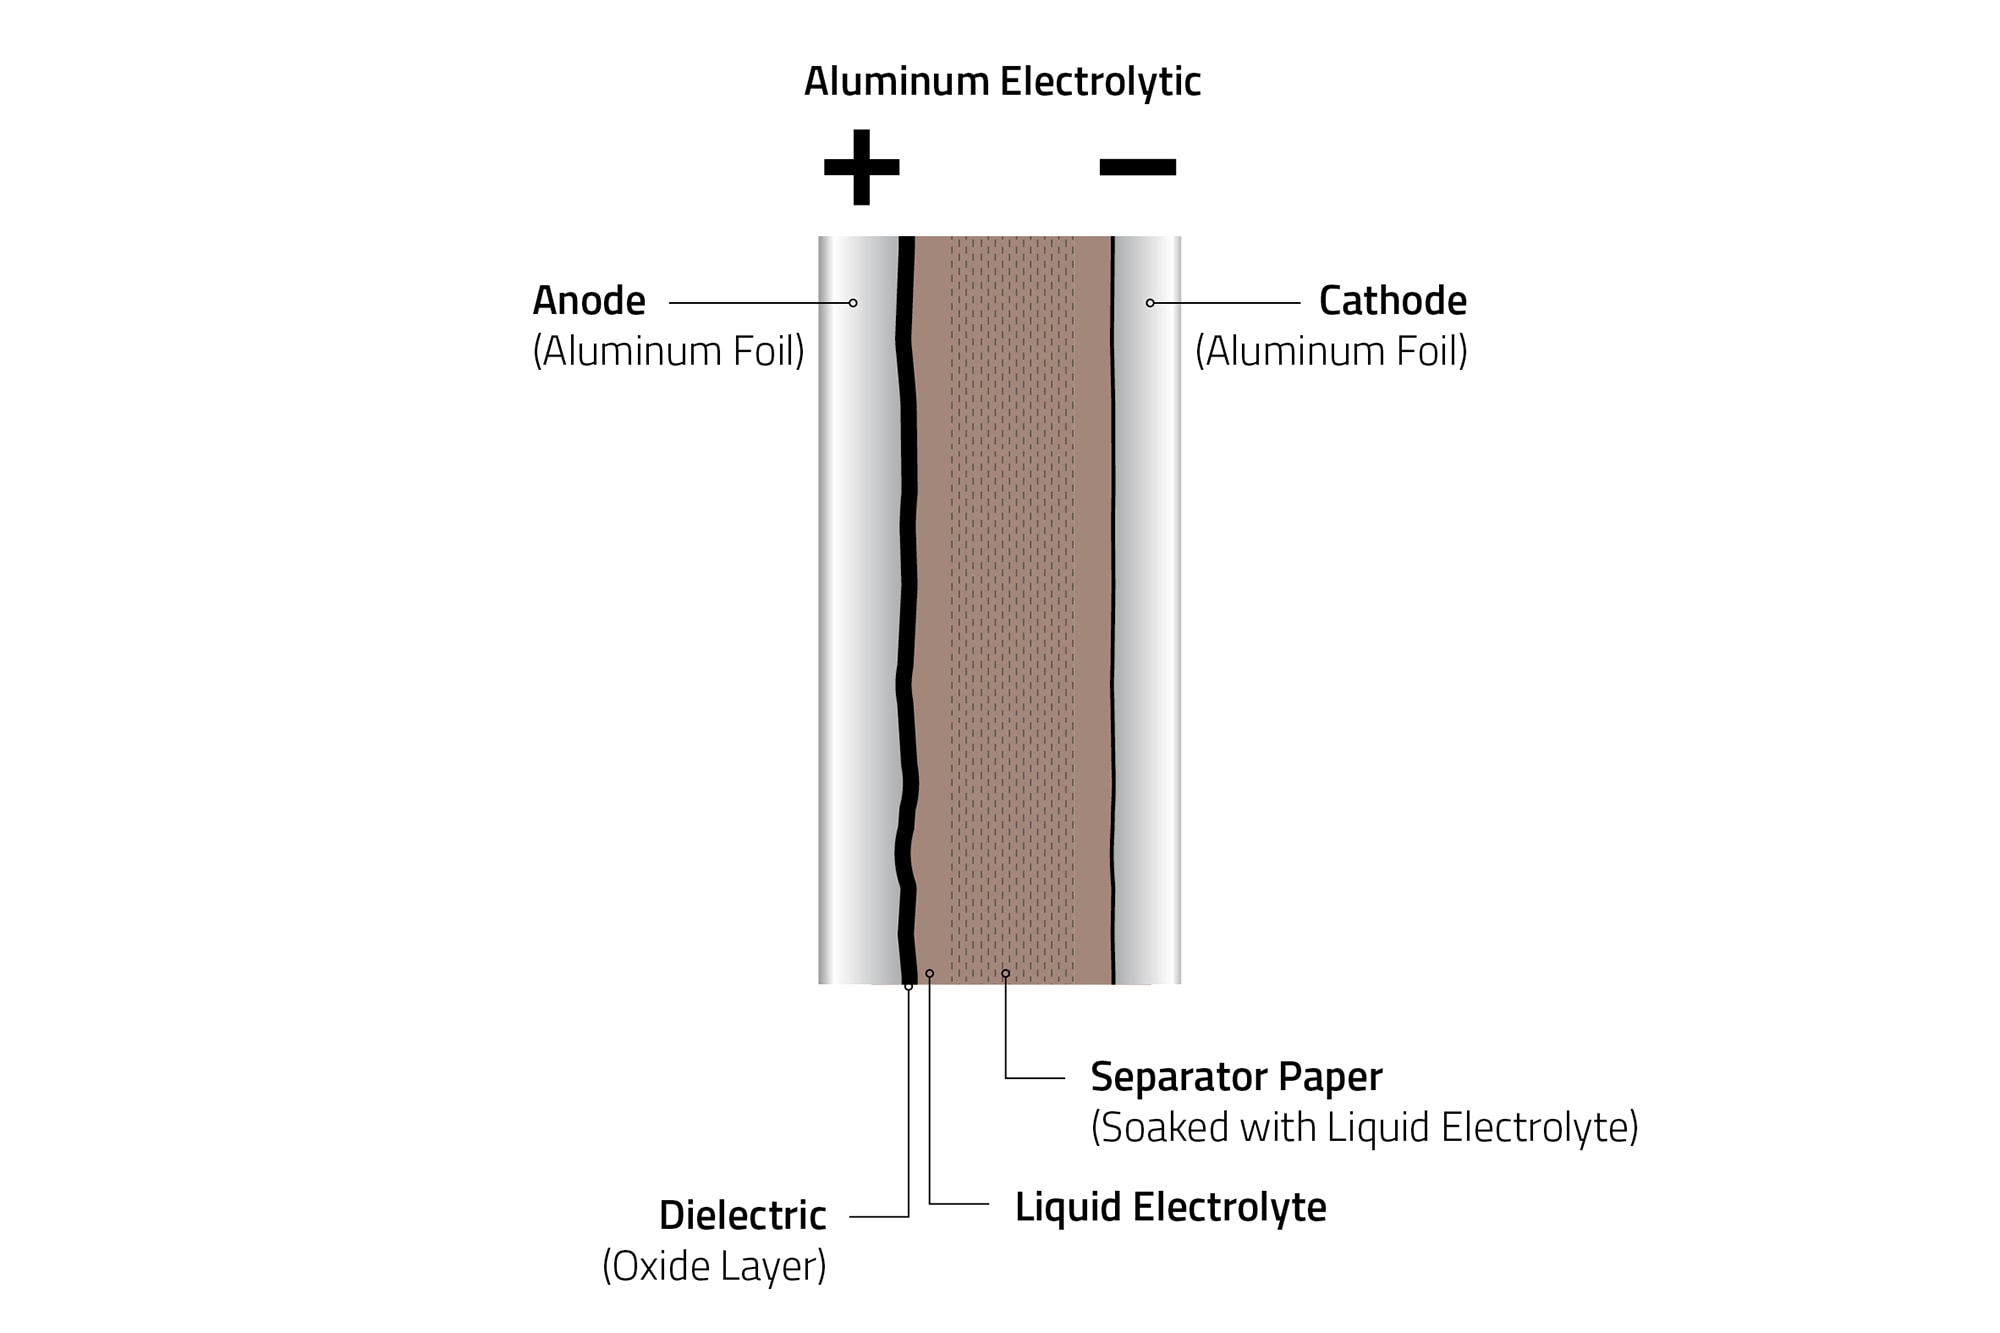 Die Aluminiumfolie der Anode wird vor der Wicklung durch eine anodische Oxidation formiert, sodass das Dielektrikum (Oxidschicht) verstärkt wird. Der Wickel wird vollständig in Elektrolyt getränkt. Dieses Elektrolyt wird durch die Papierlage gleichmäßig verteilt. Zusätzlich sorgt die Papierlage für einen Abstand zwischen Anoden- und Kathodenfolie.